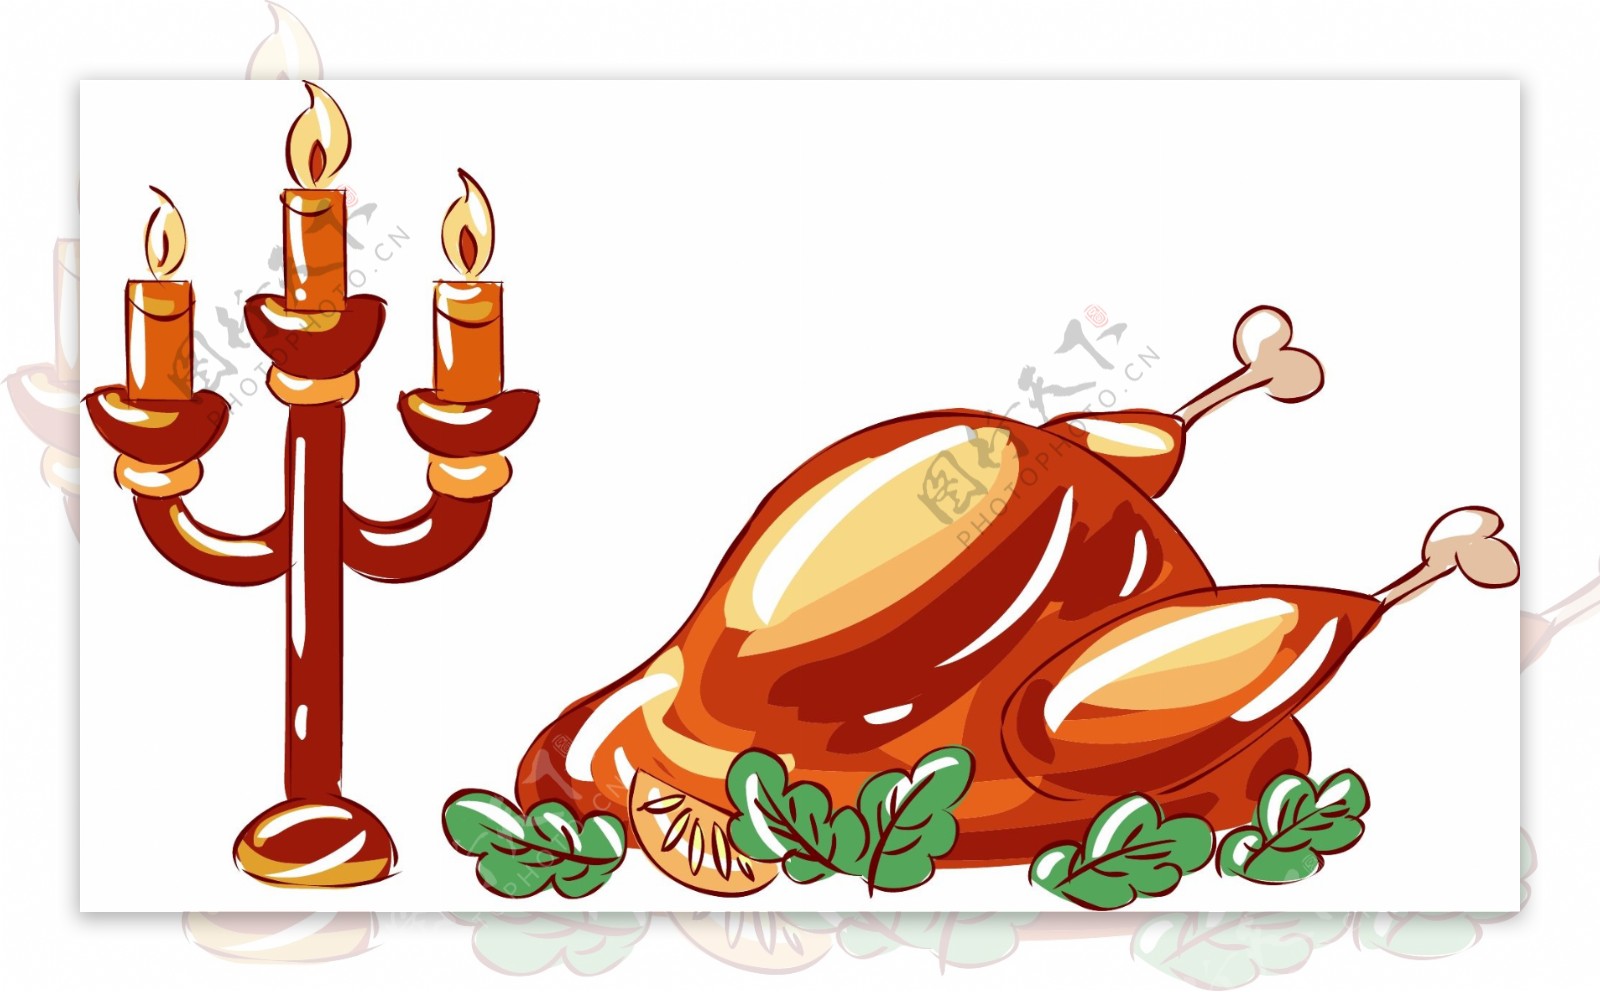 感恩节手绘美食卡通火鸡